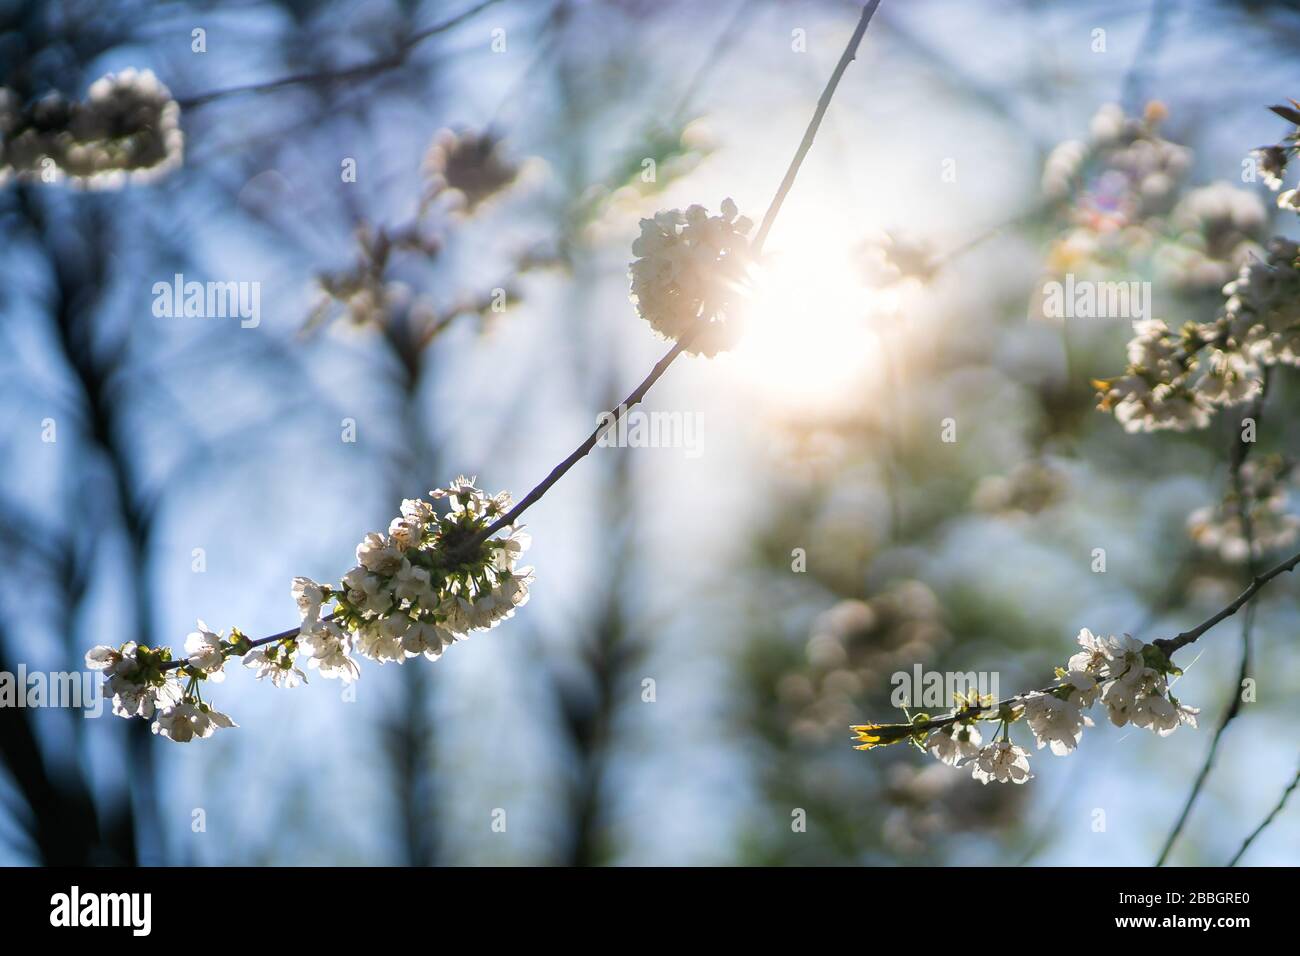 Frühlingsblütenhintergrund. Blühende Blumen eines wilden Kirschbaums in der Natur. Abstrakter verschwommener Hintergrund und Sonnenschein, schöner Stadtpark. Stockfoto